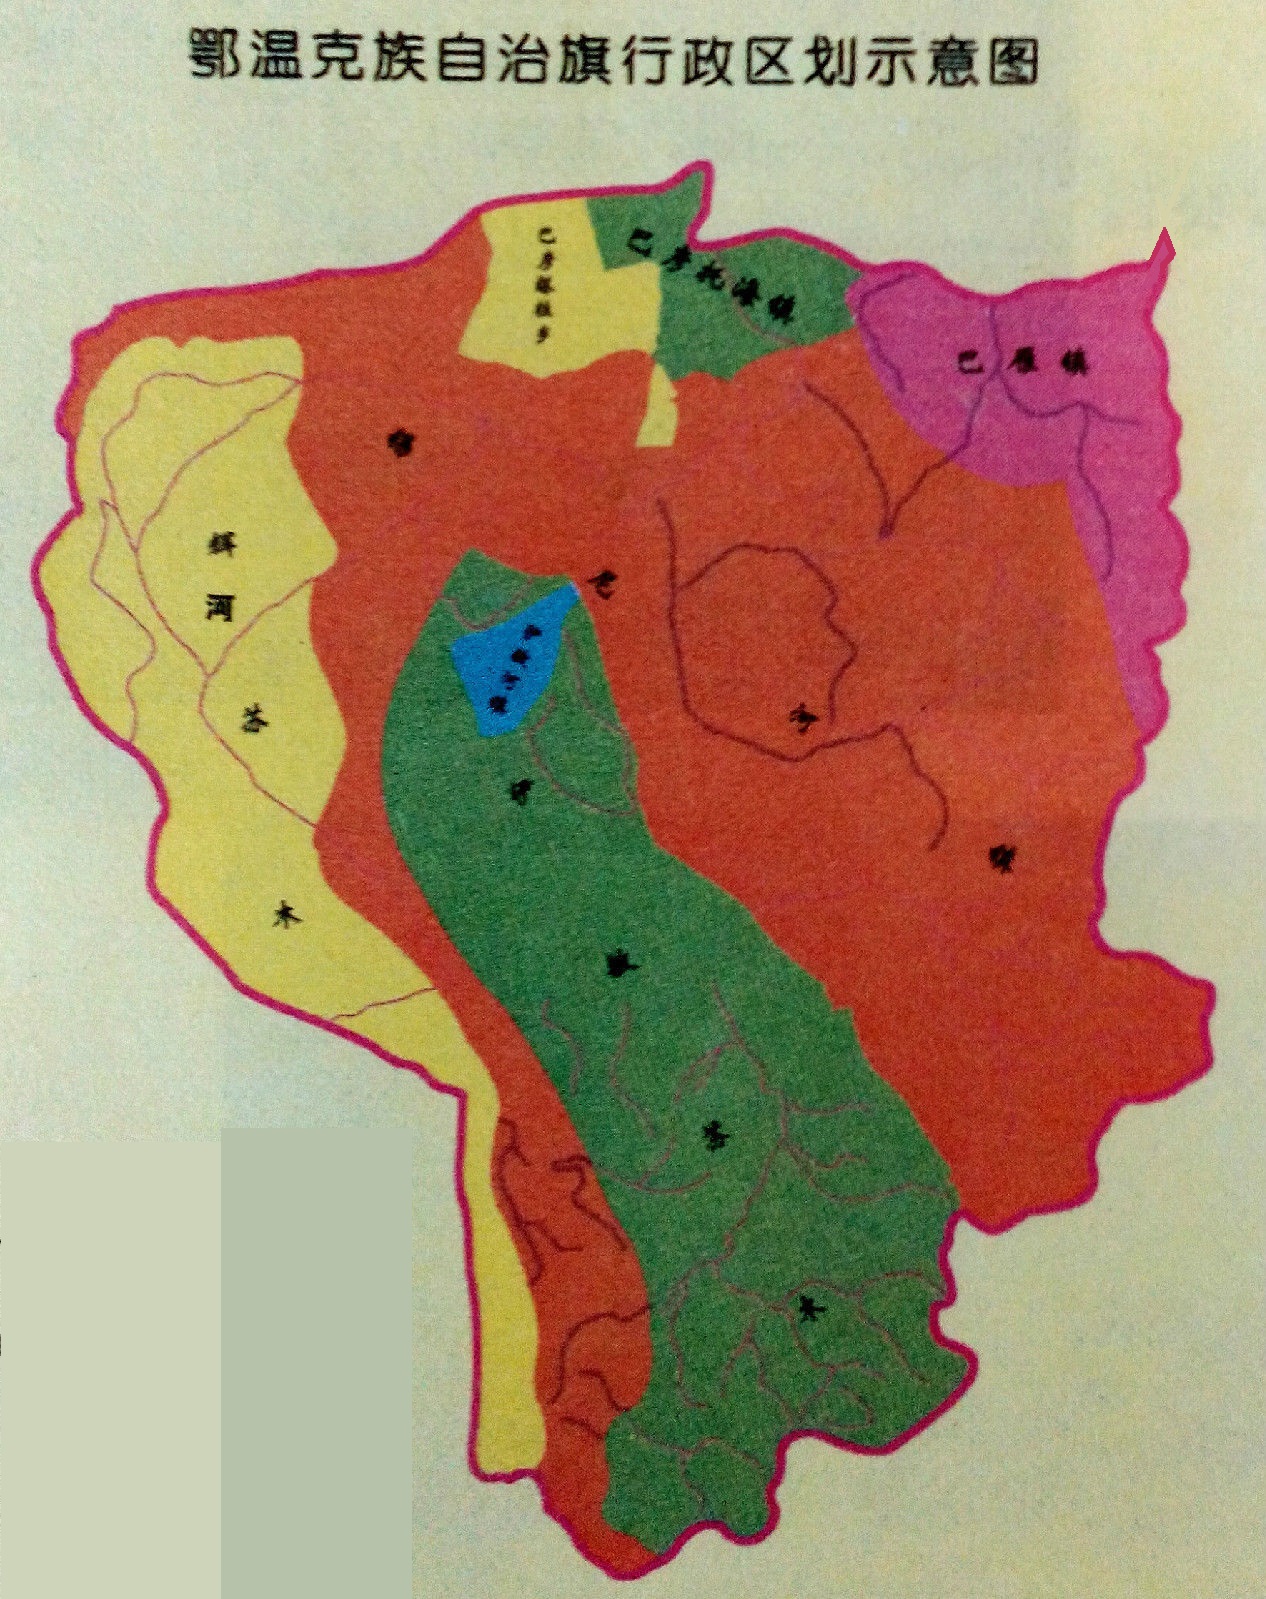 2008年時鄂溫克族自治旗行政區劃